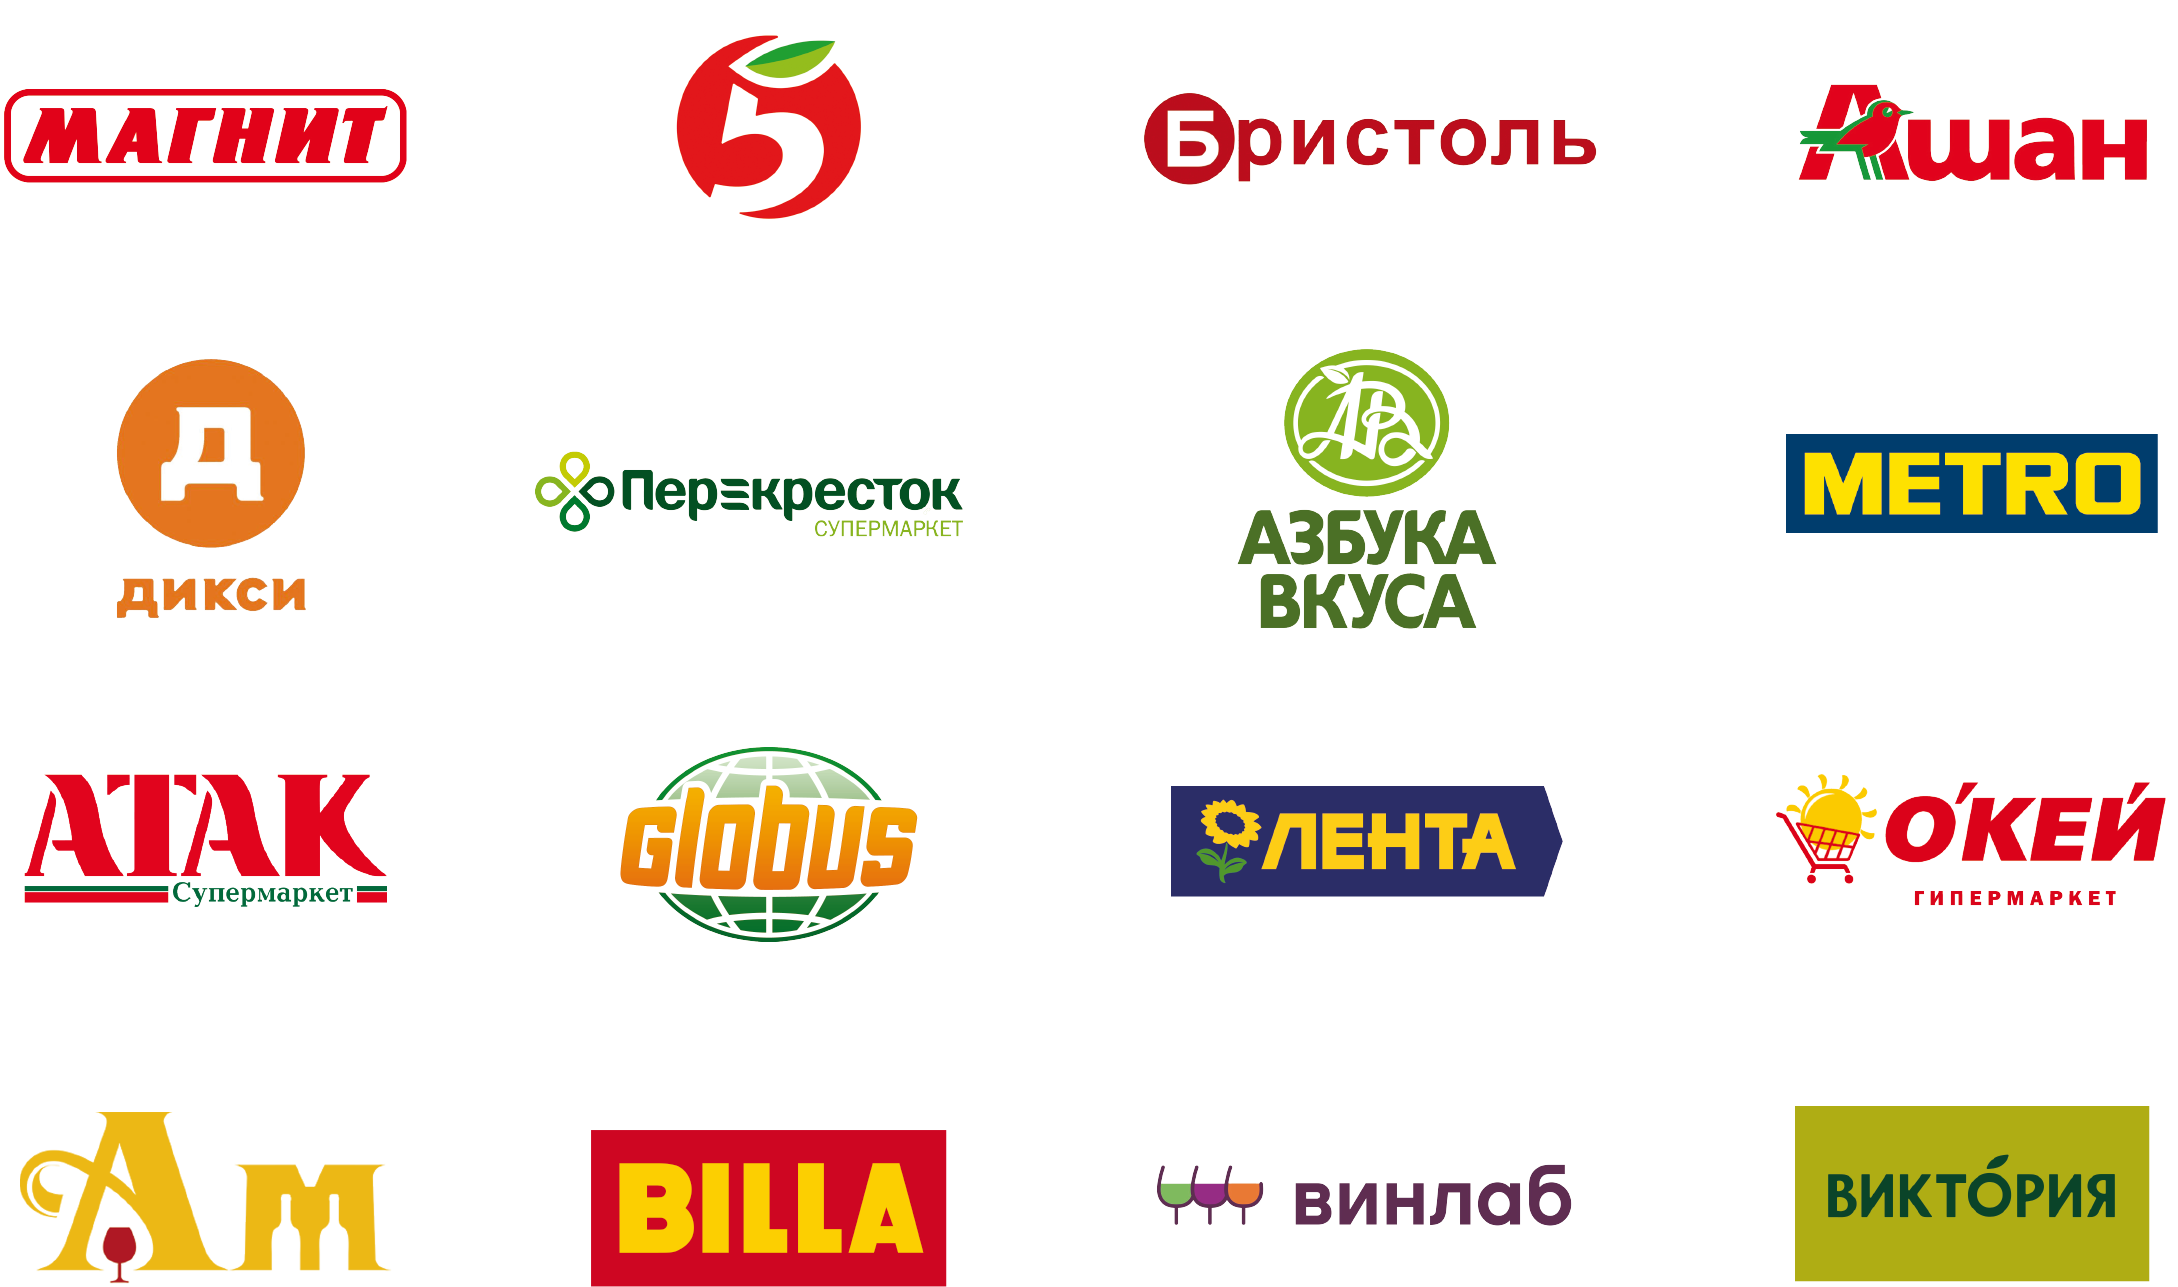 Крупные сетевые магазины. Эмблемы торговых сетей. Логотипы продуктовых сетей. Сетевые продуктовые магазины.